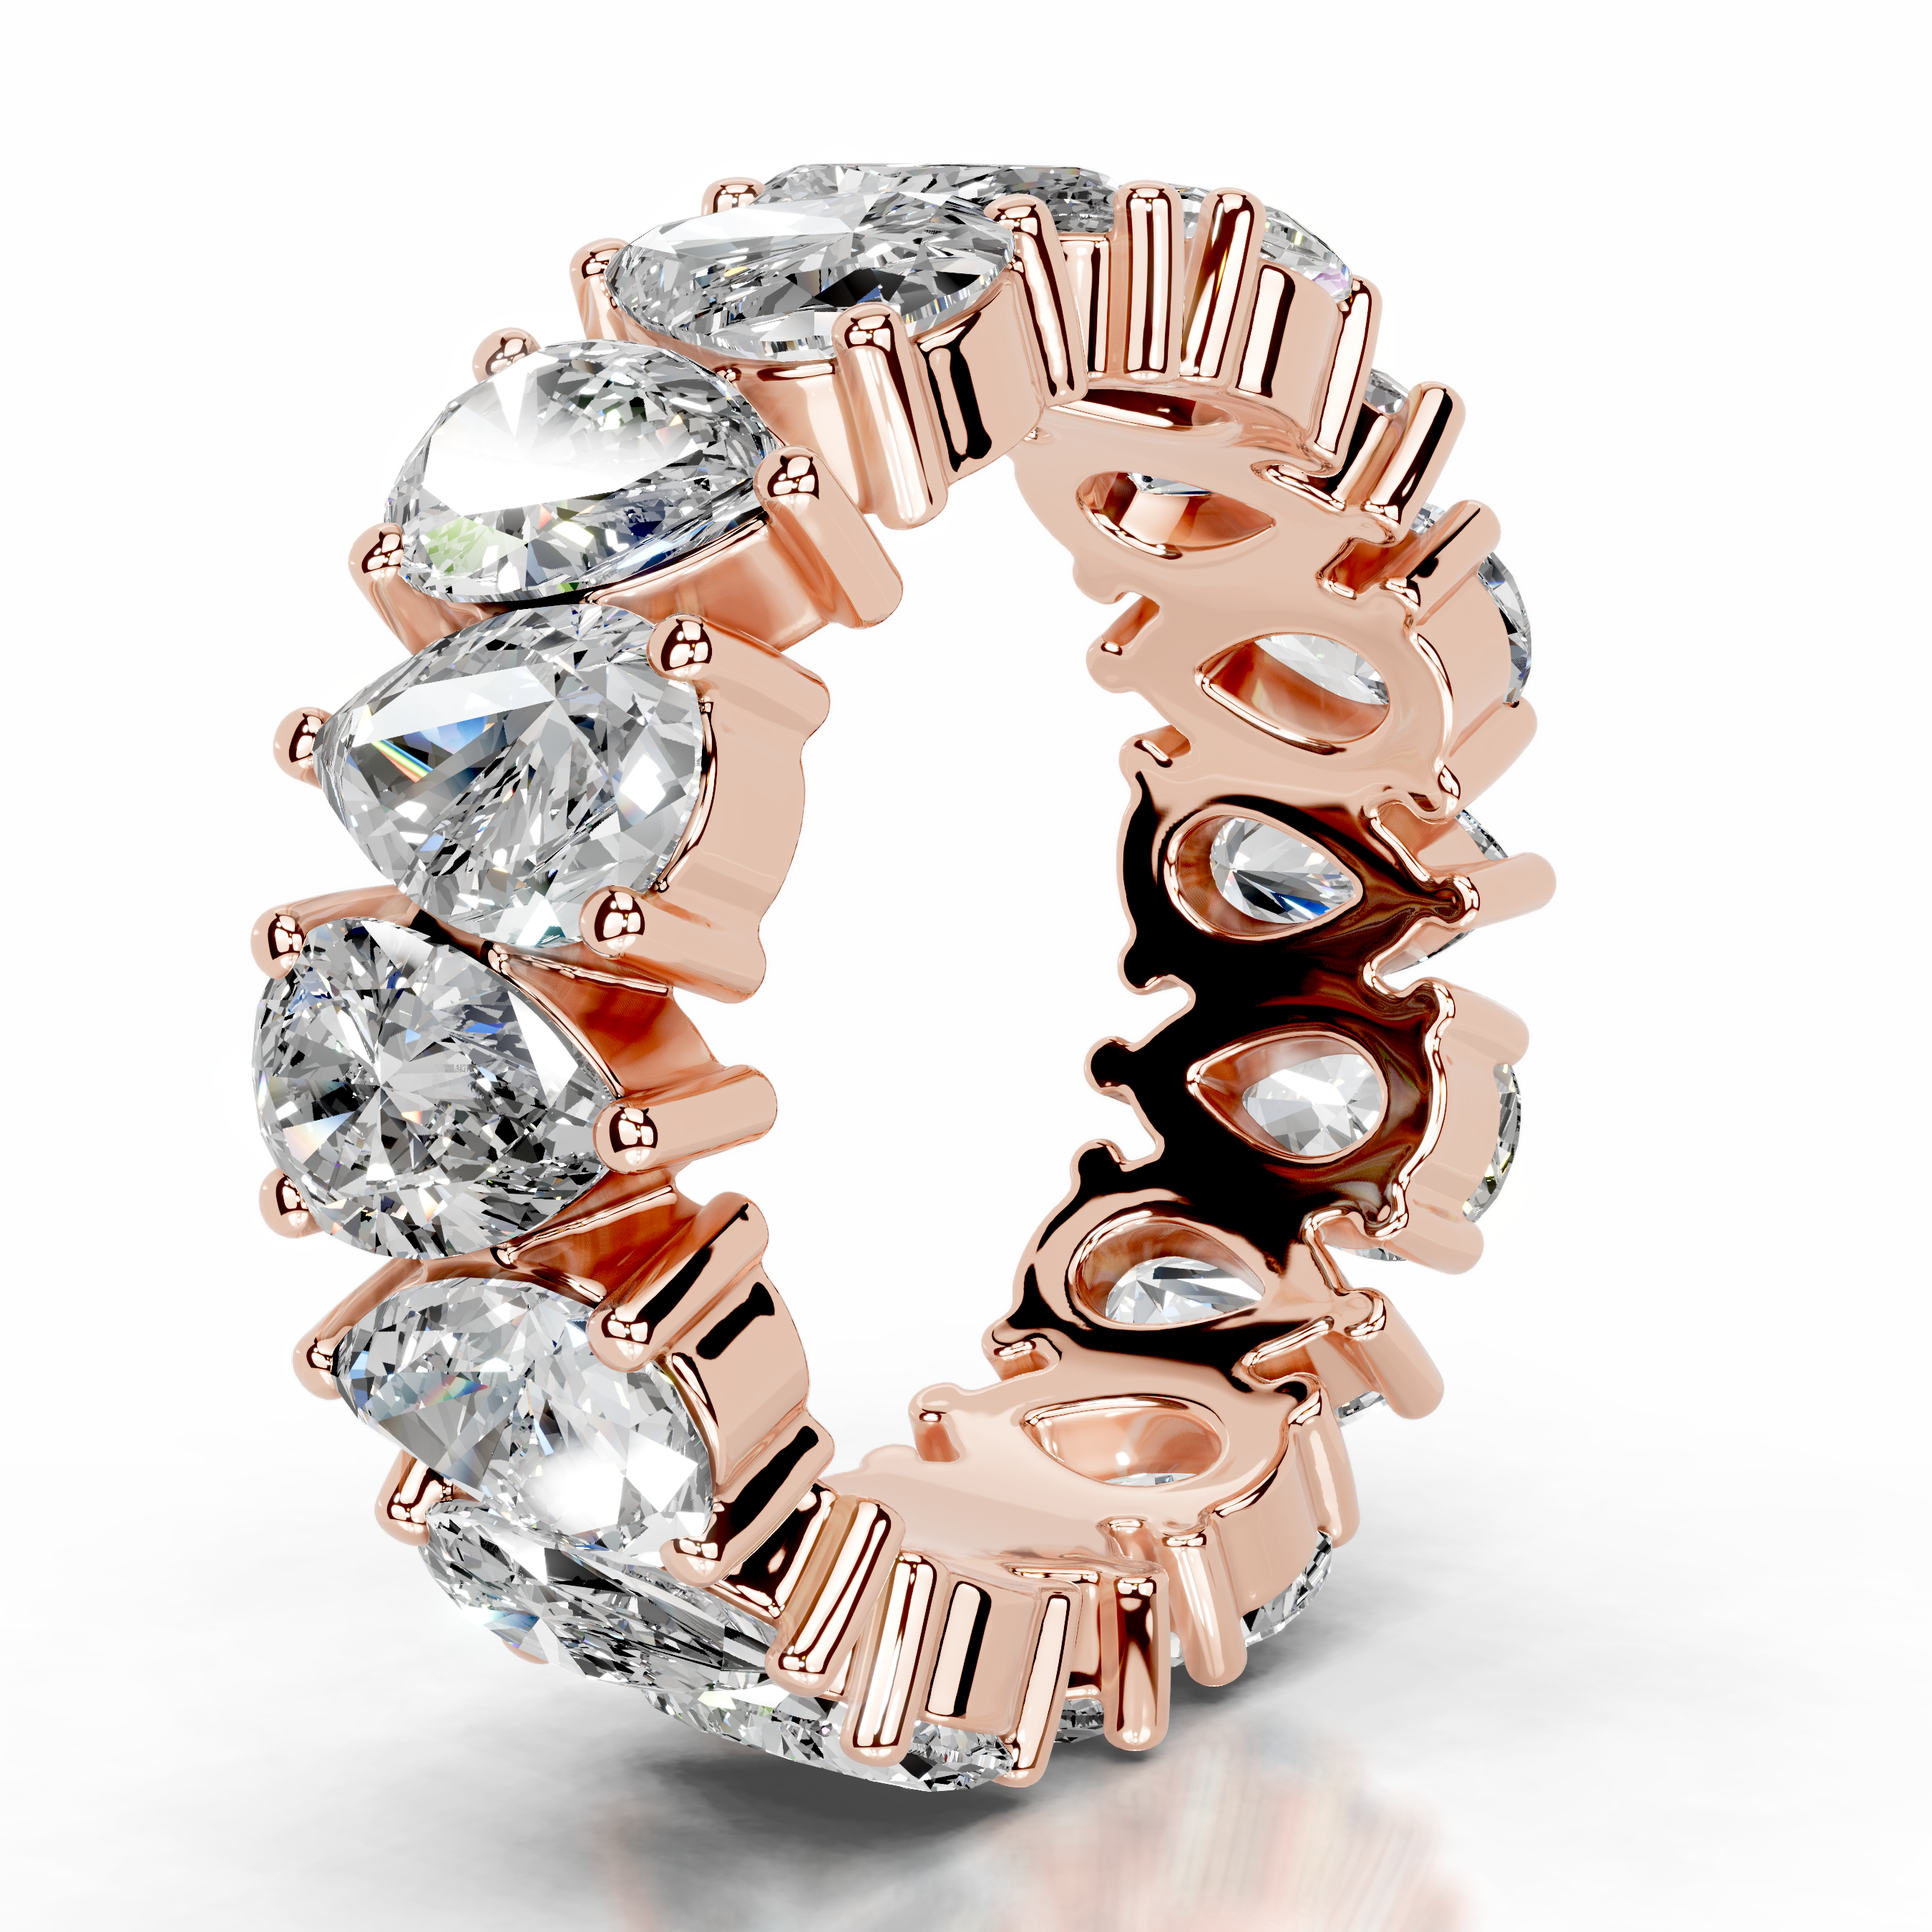 Sarah Lab Grown Diamond Wedding Ring   (6 Carat) -14K Rose Gold